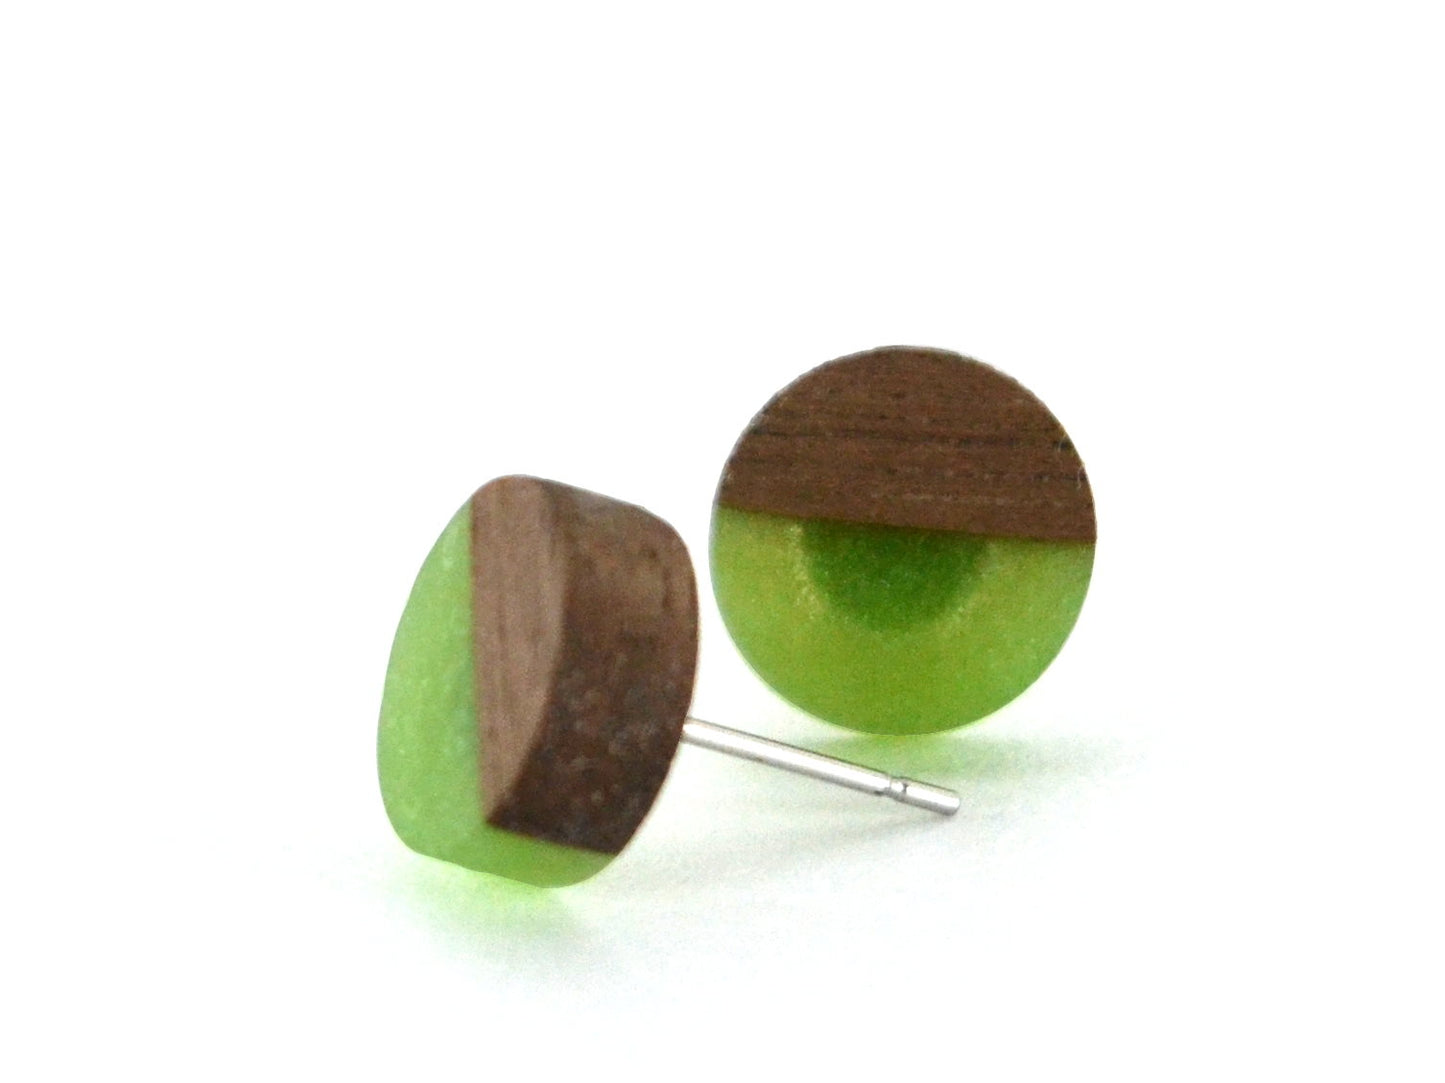 walnut stud earrings with kiwi green resin fill